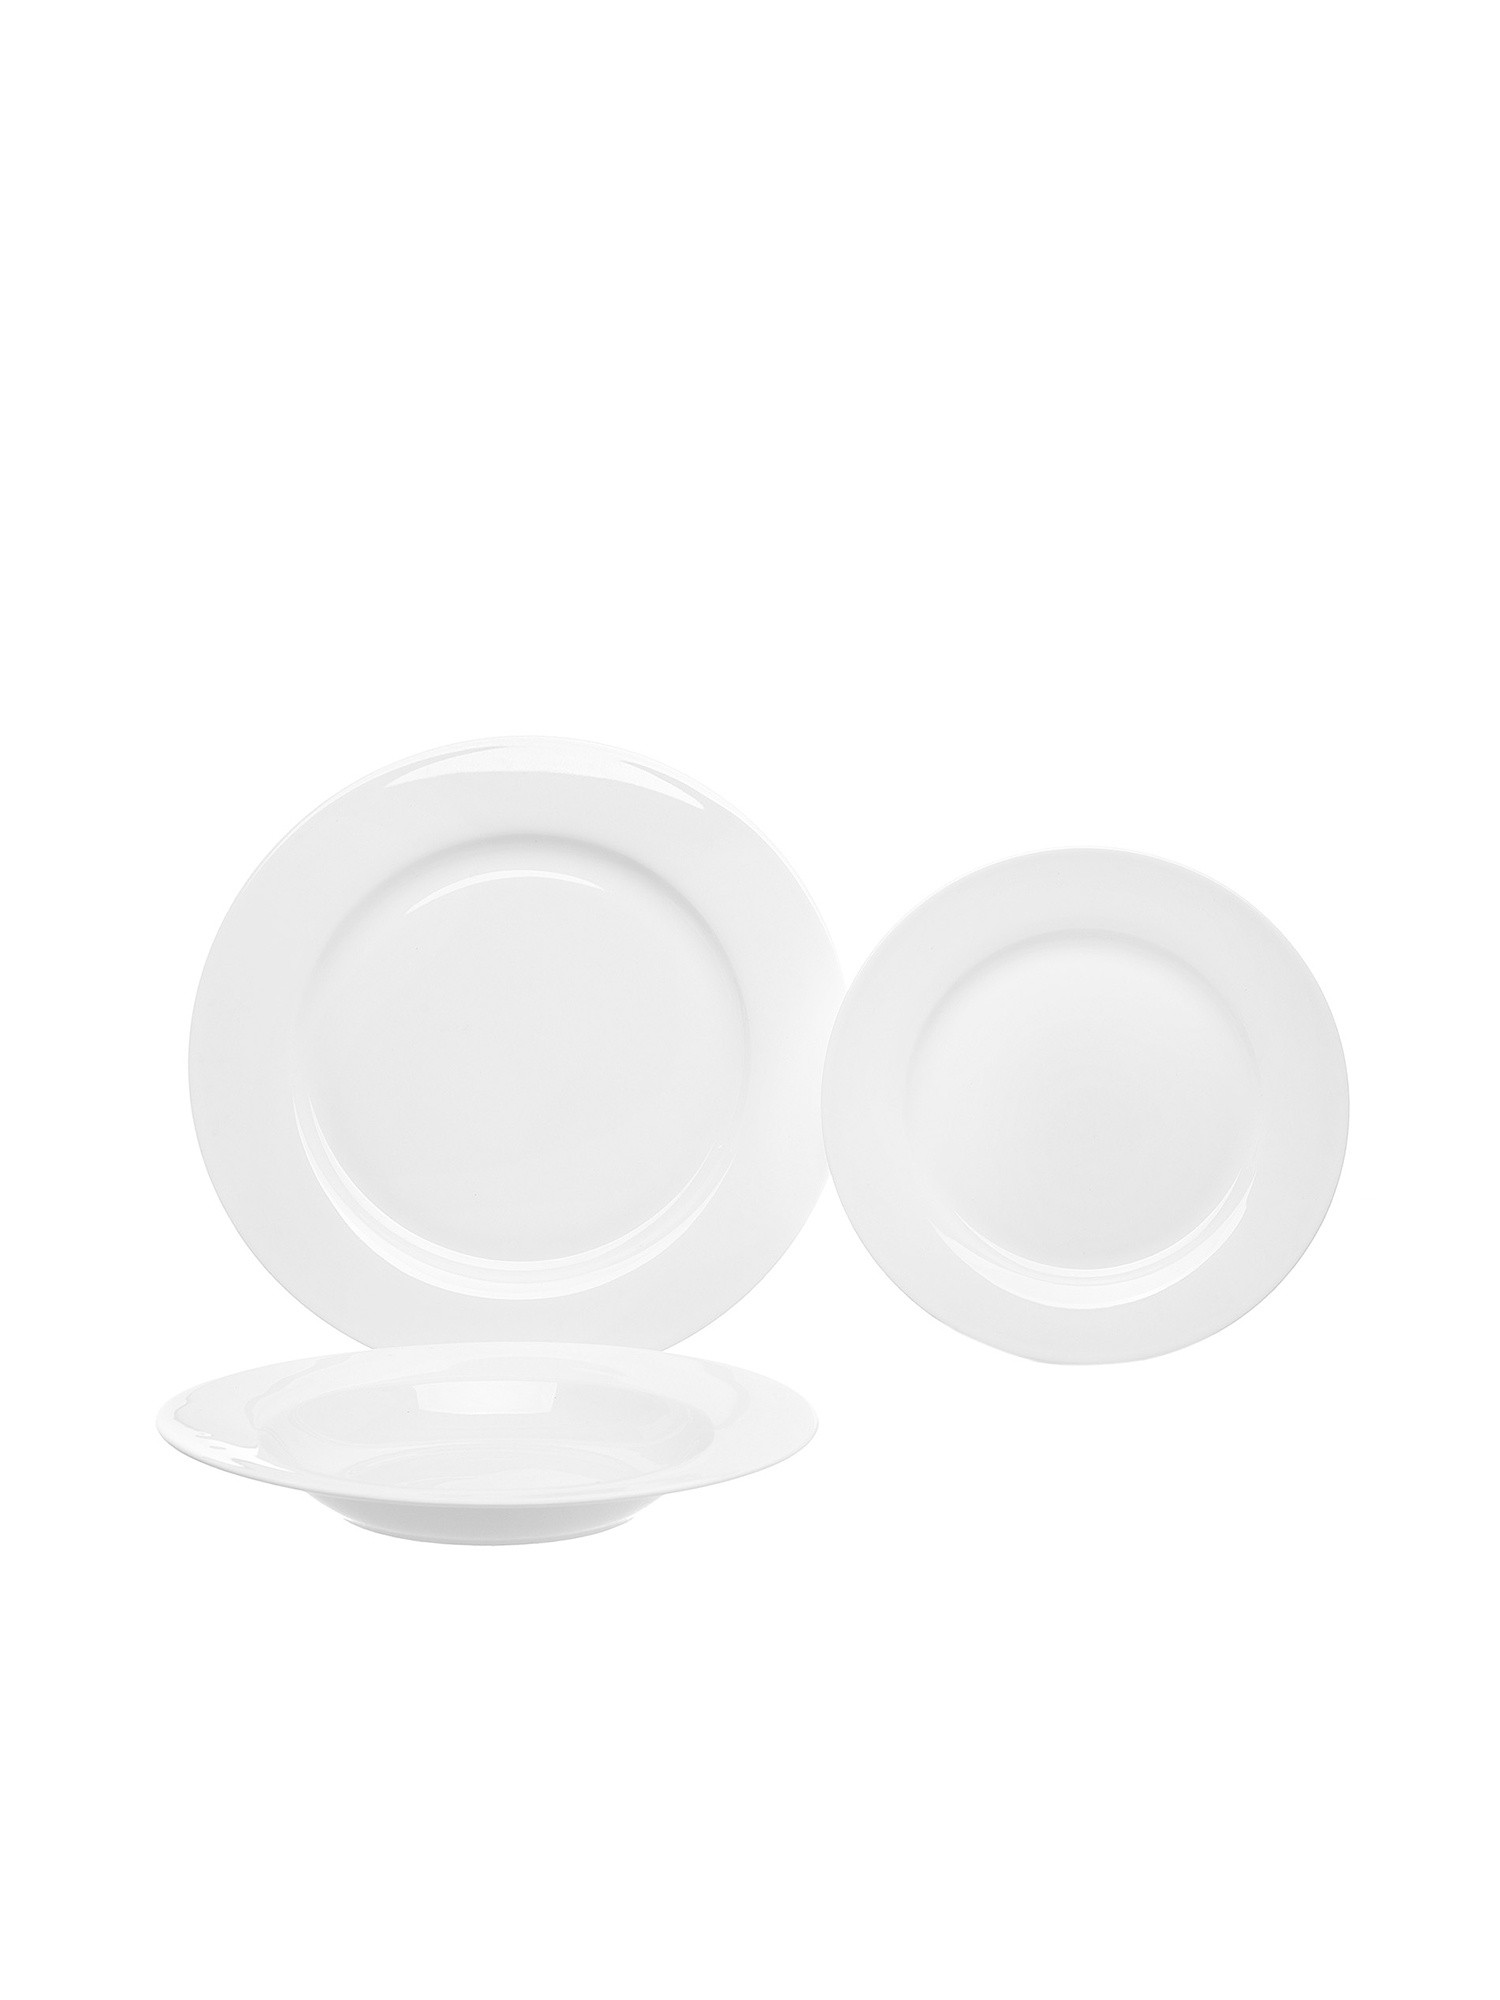 Set of 18 Falda white porcelain plates, White, large image number 0